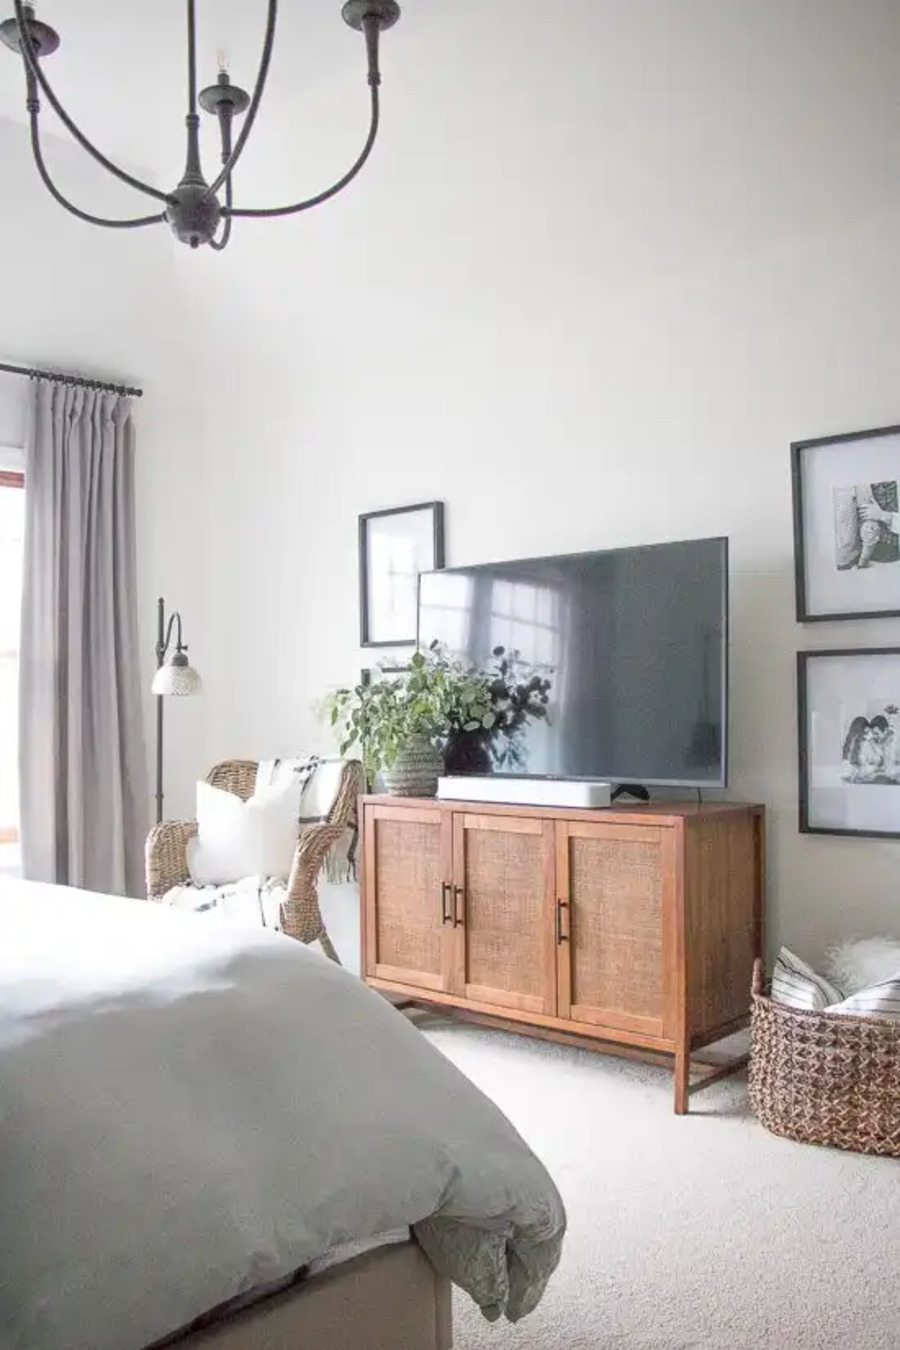 Dormitorio de estilo clásico. Muros blancos, alfombra blanca. Mueble de televisión de madera clara y puertas de fibras naturales. Muro galería simétrico, al costado del televisor, con cuadros en blanco y negro.